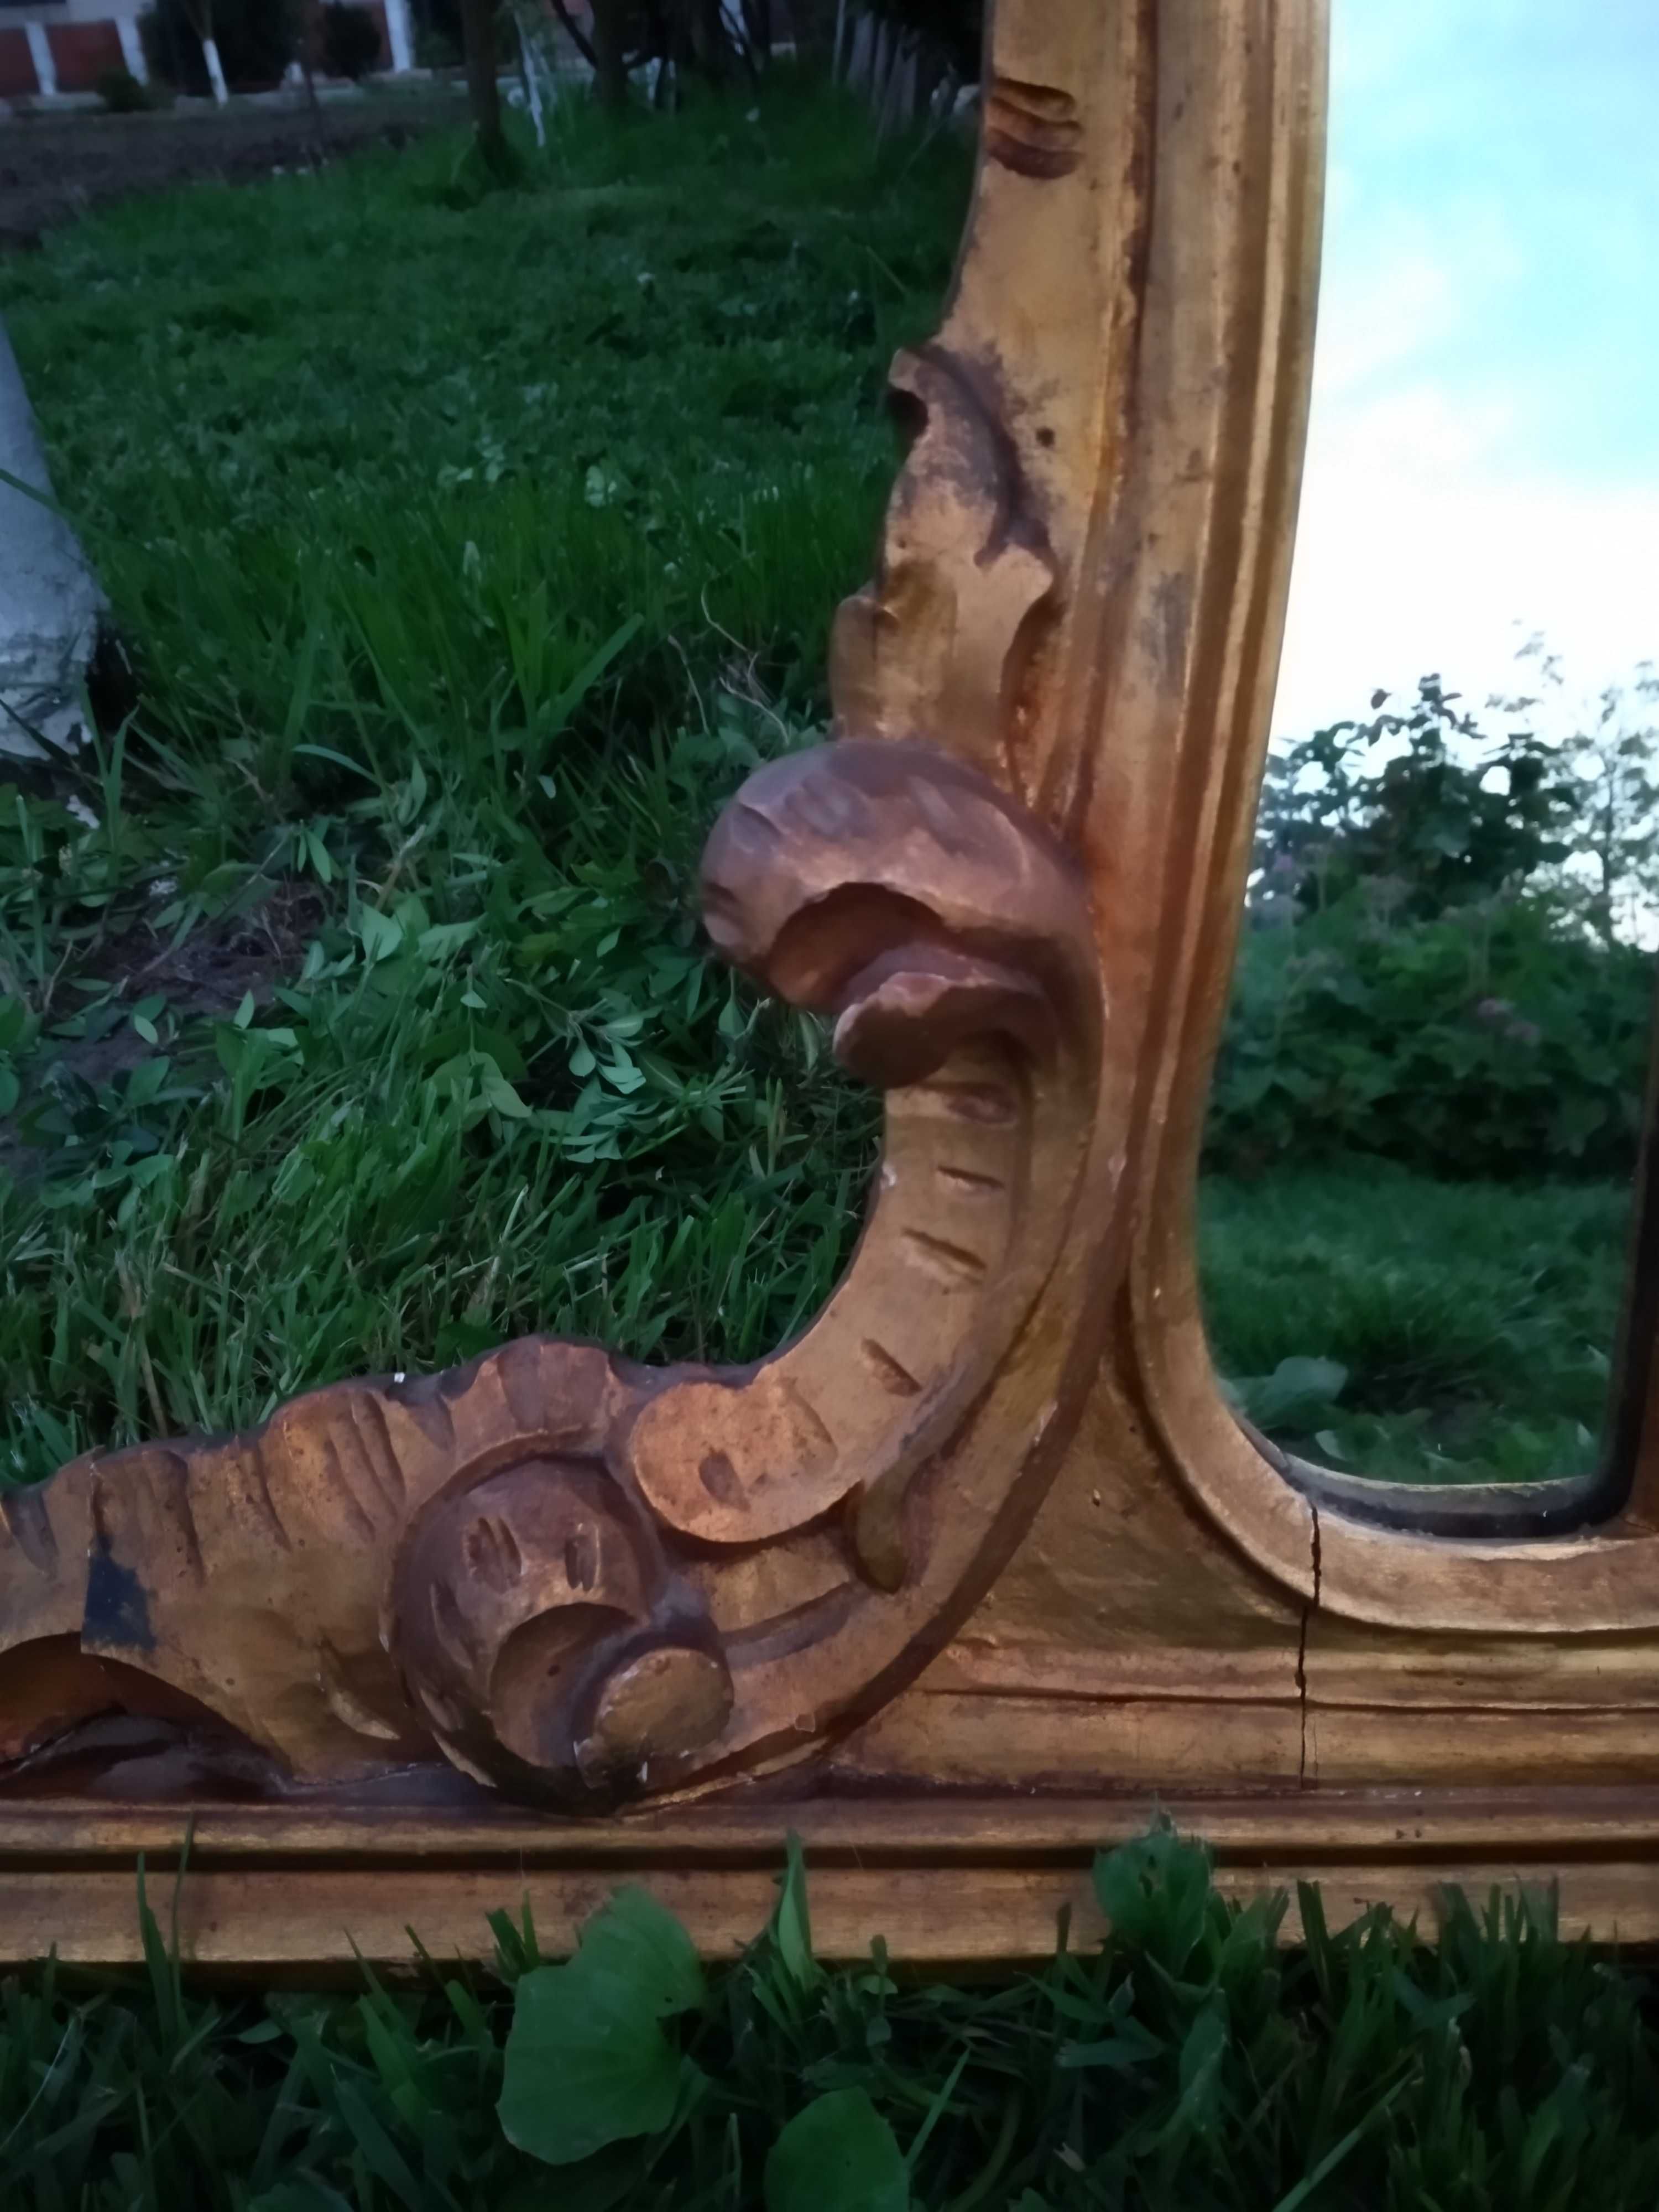 Oglindă vintage in lemn 120/122